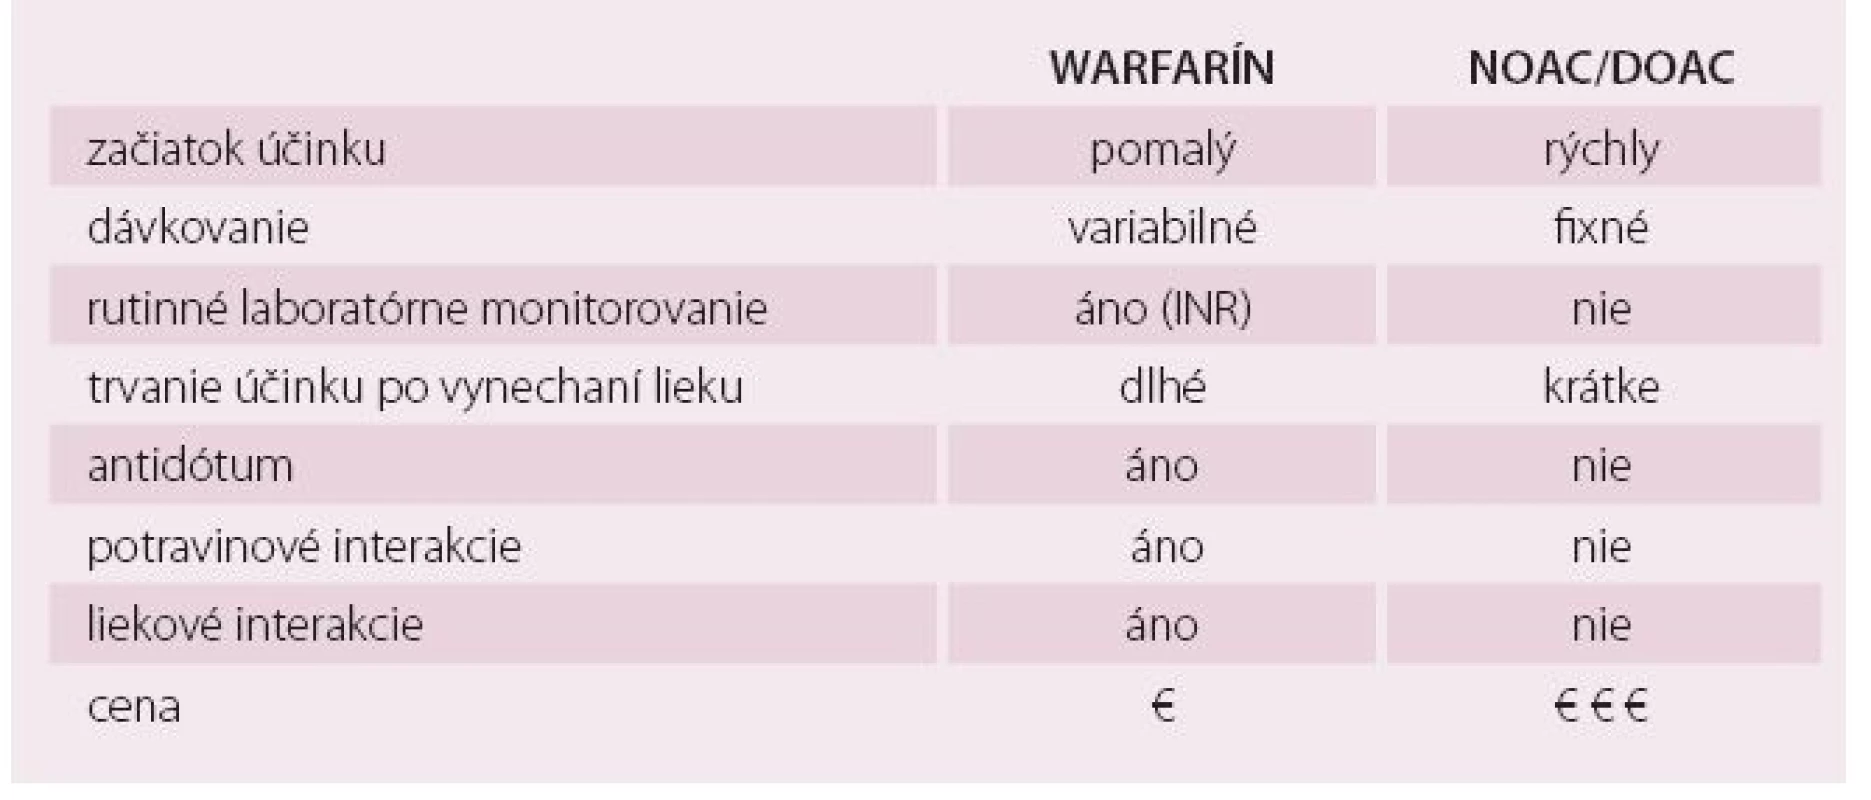 Hlavné rozdiely medzi warfarínom a novými priamymi antikoagulanciami (NOAC, DOAC) [26,51].